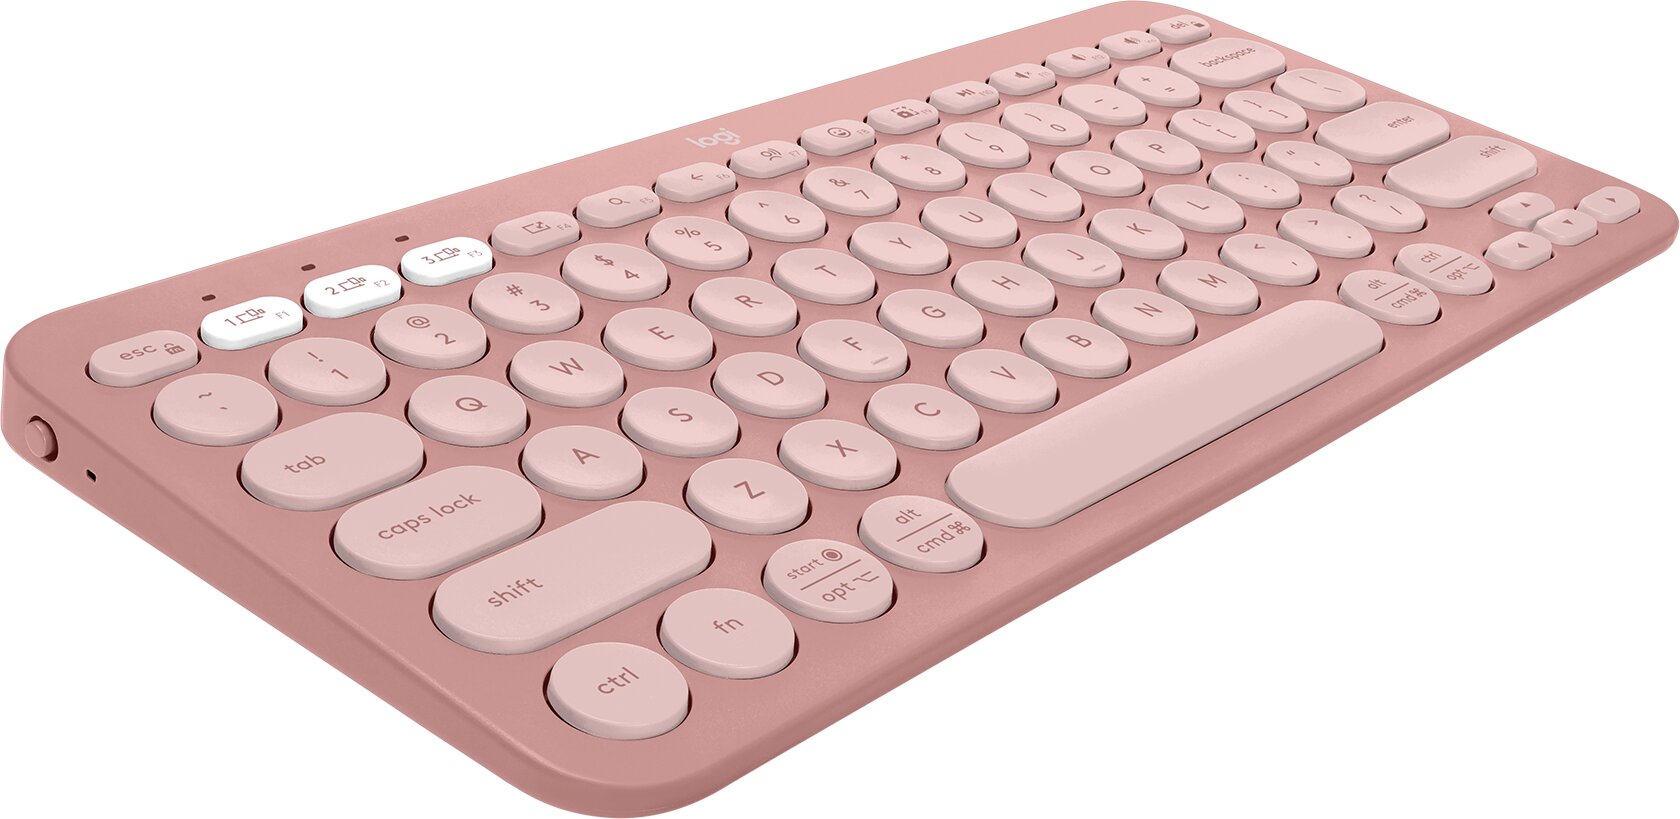 Logitech Pebble Keyboard 2 K380s, rose